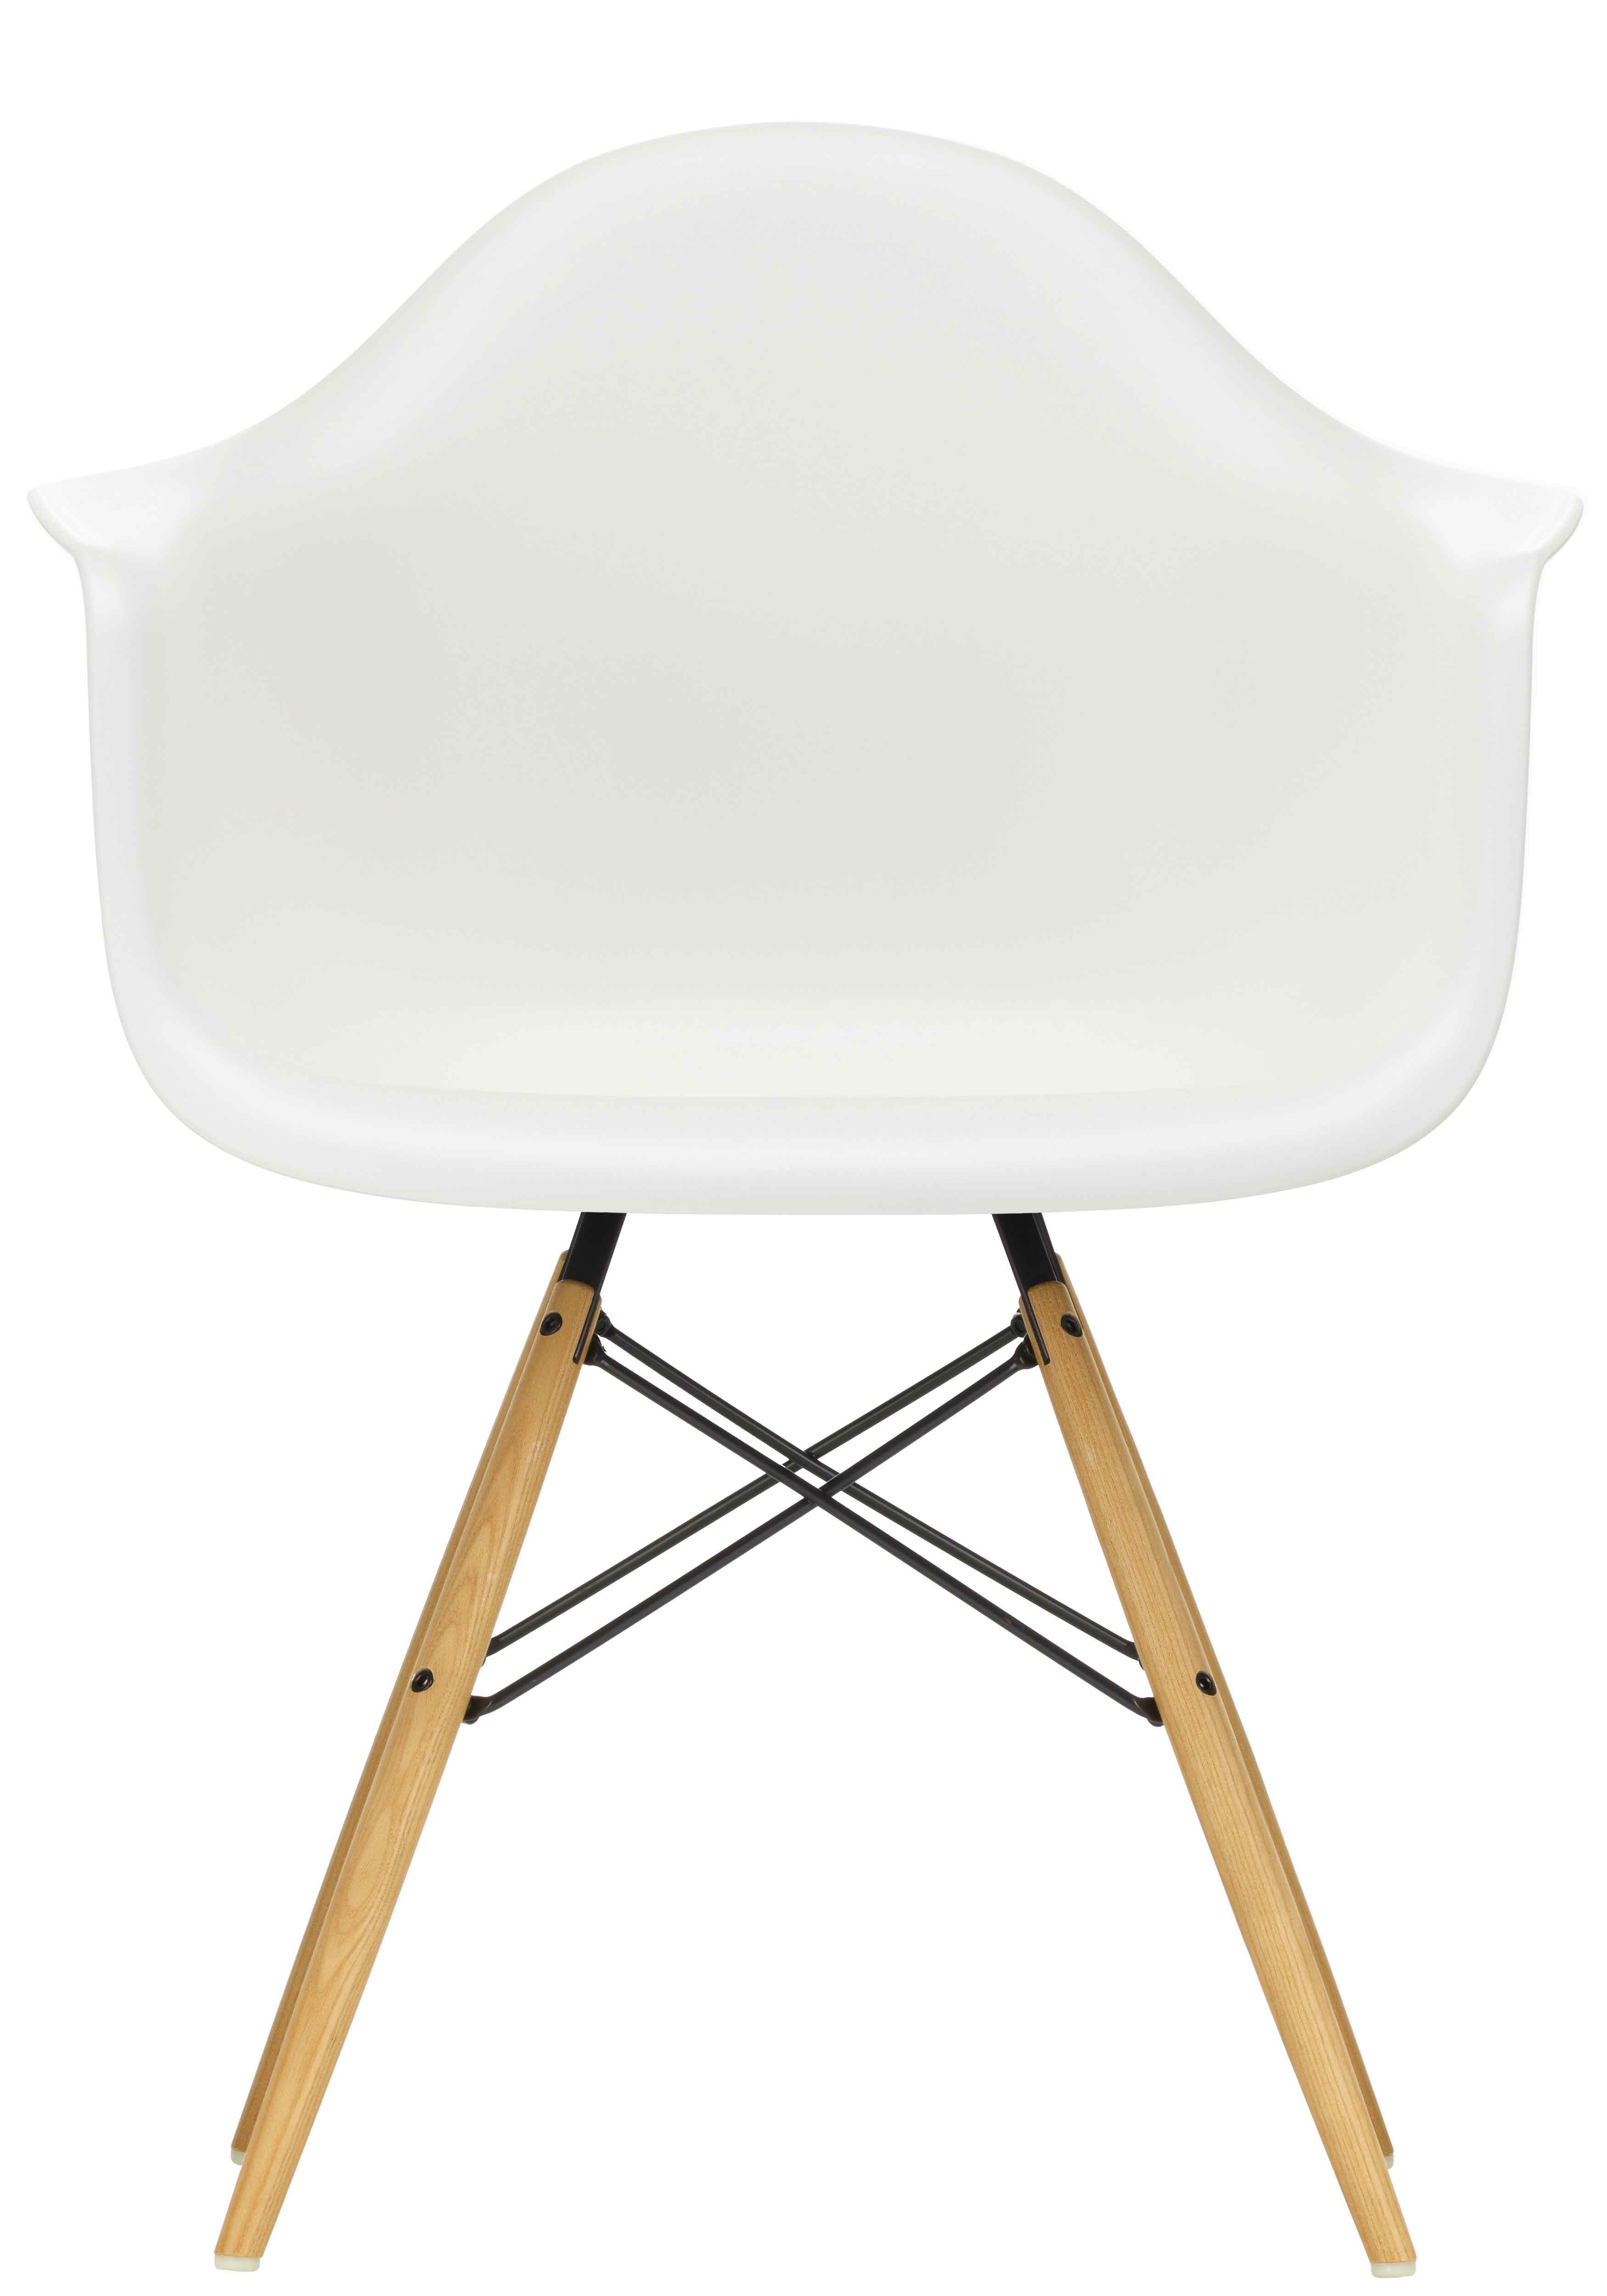 Designerstuhl Side chair DAW in weiss mit Holzuntergestell von Vitra jetzt im LHL Onlineshop kaufen – Vorderansicht